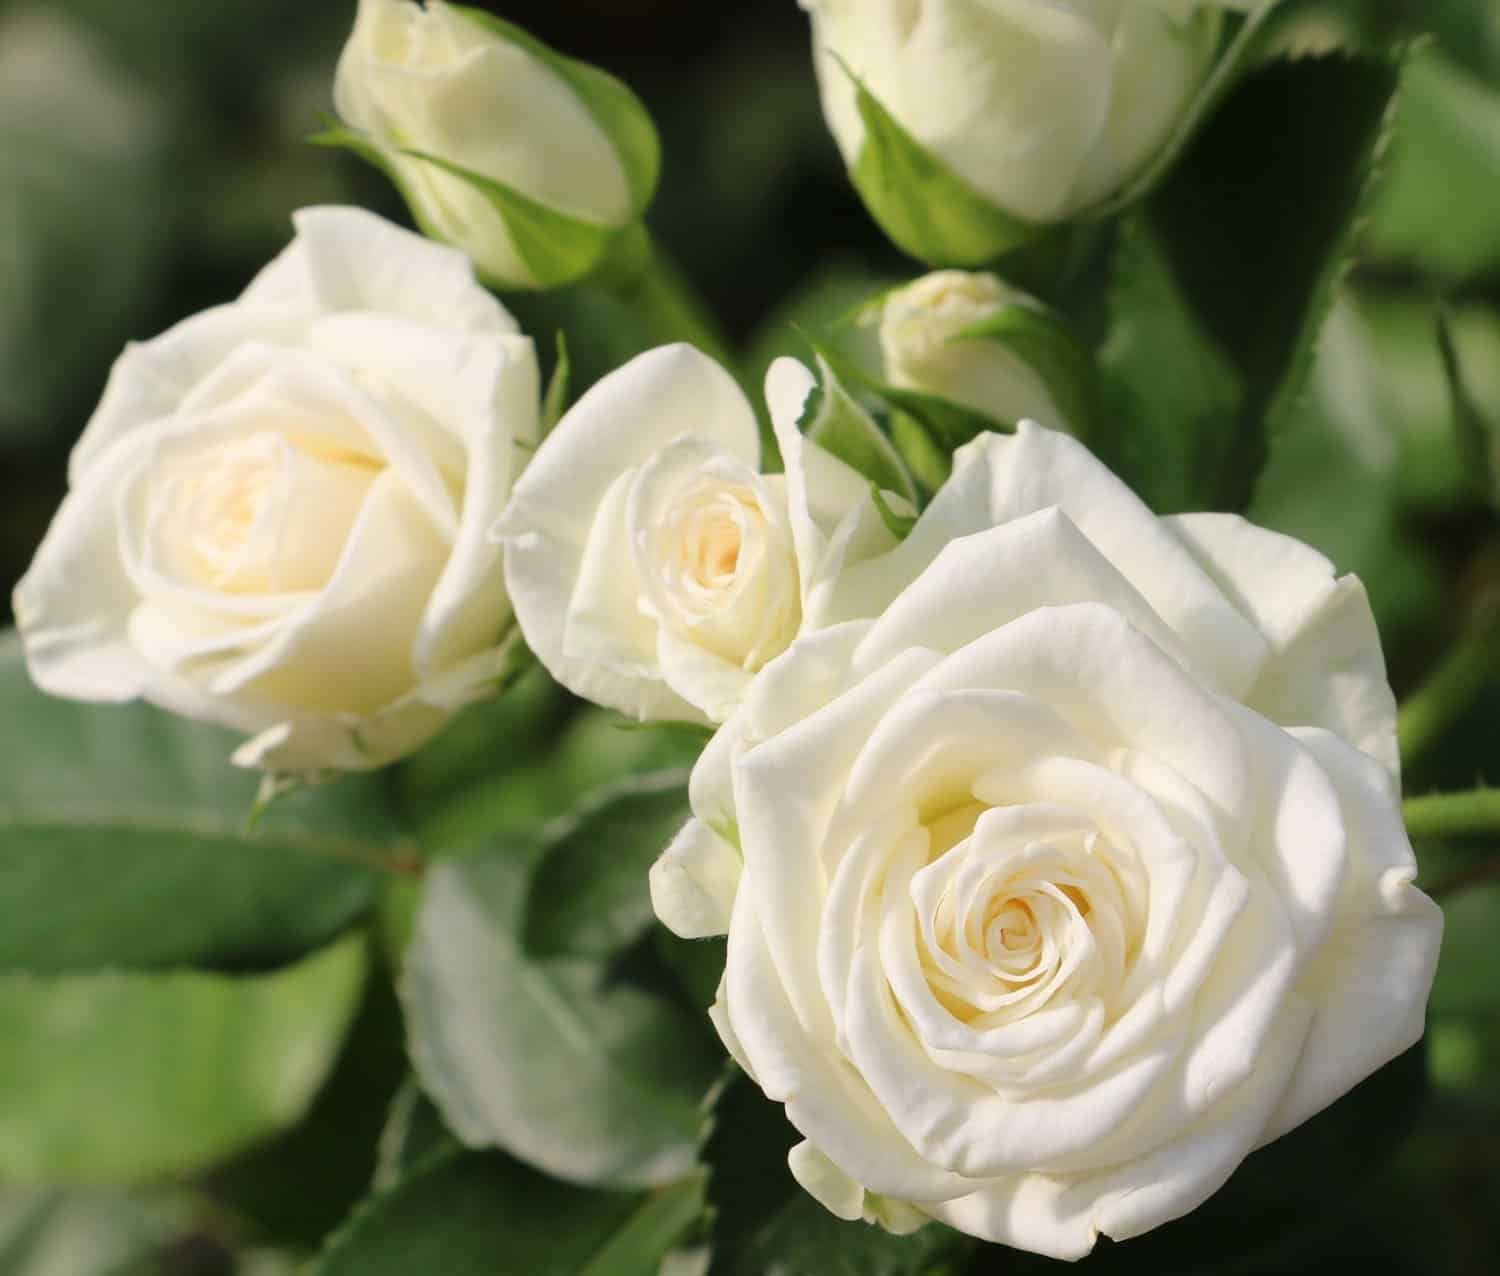 ý nghĩa của hoa hồng trắng